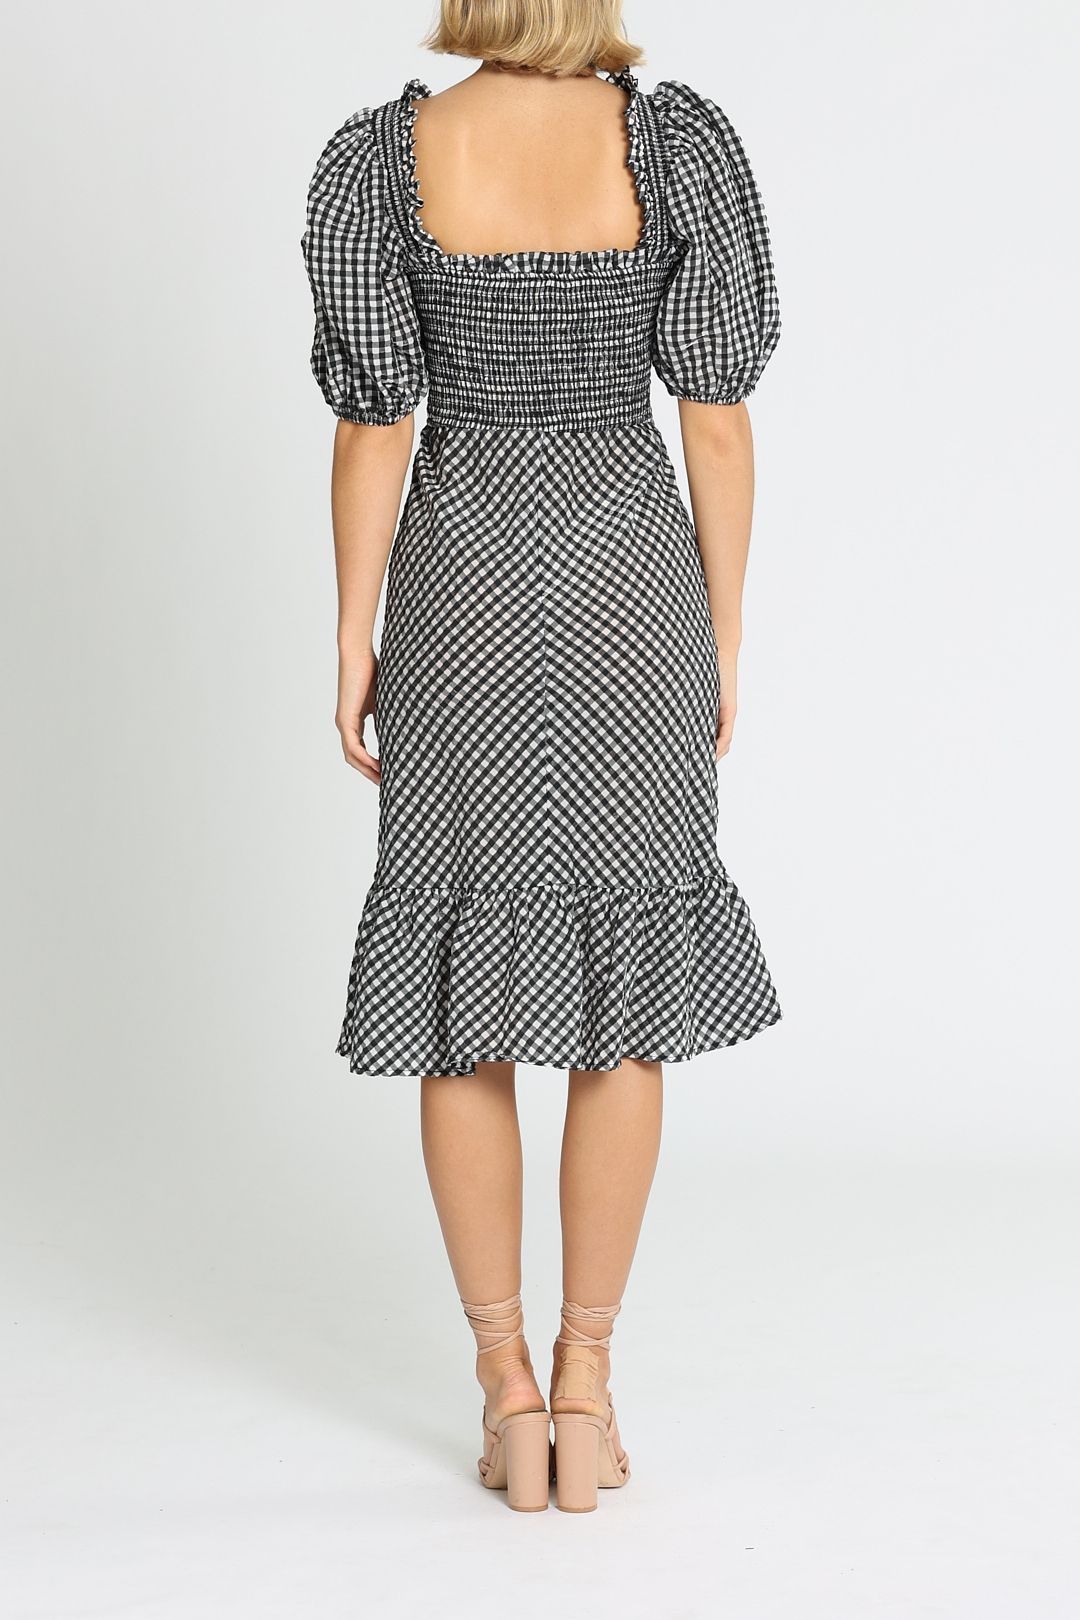 Ganni Checkered Dress Midi